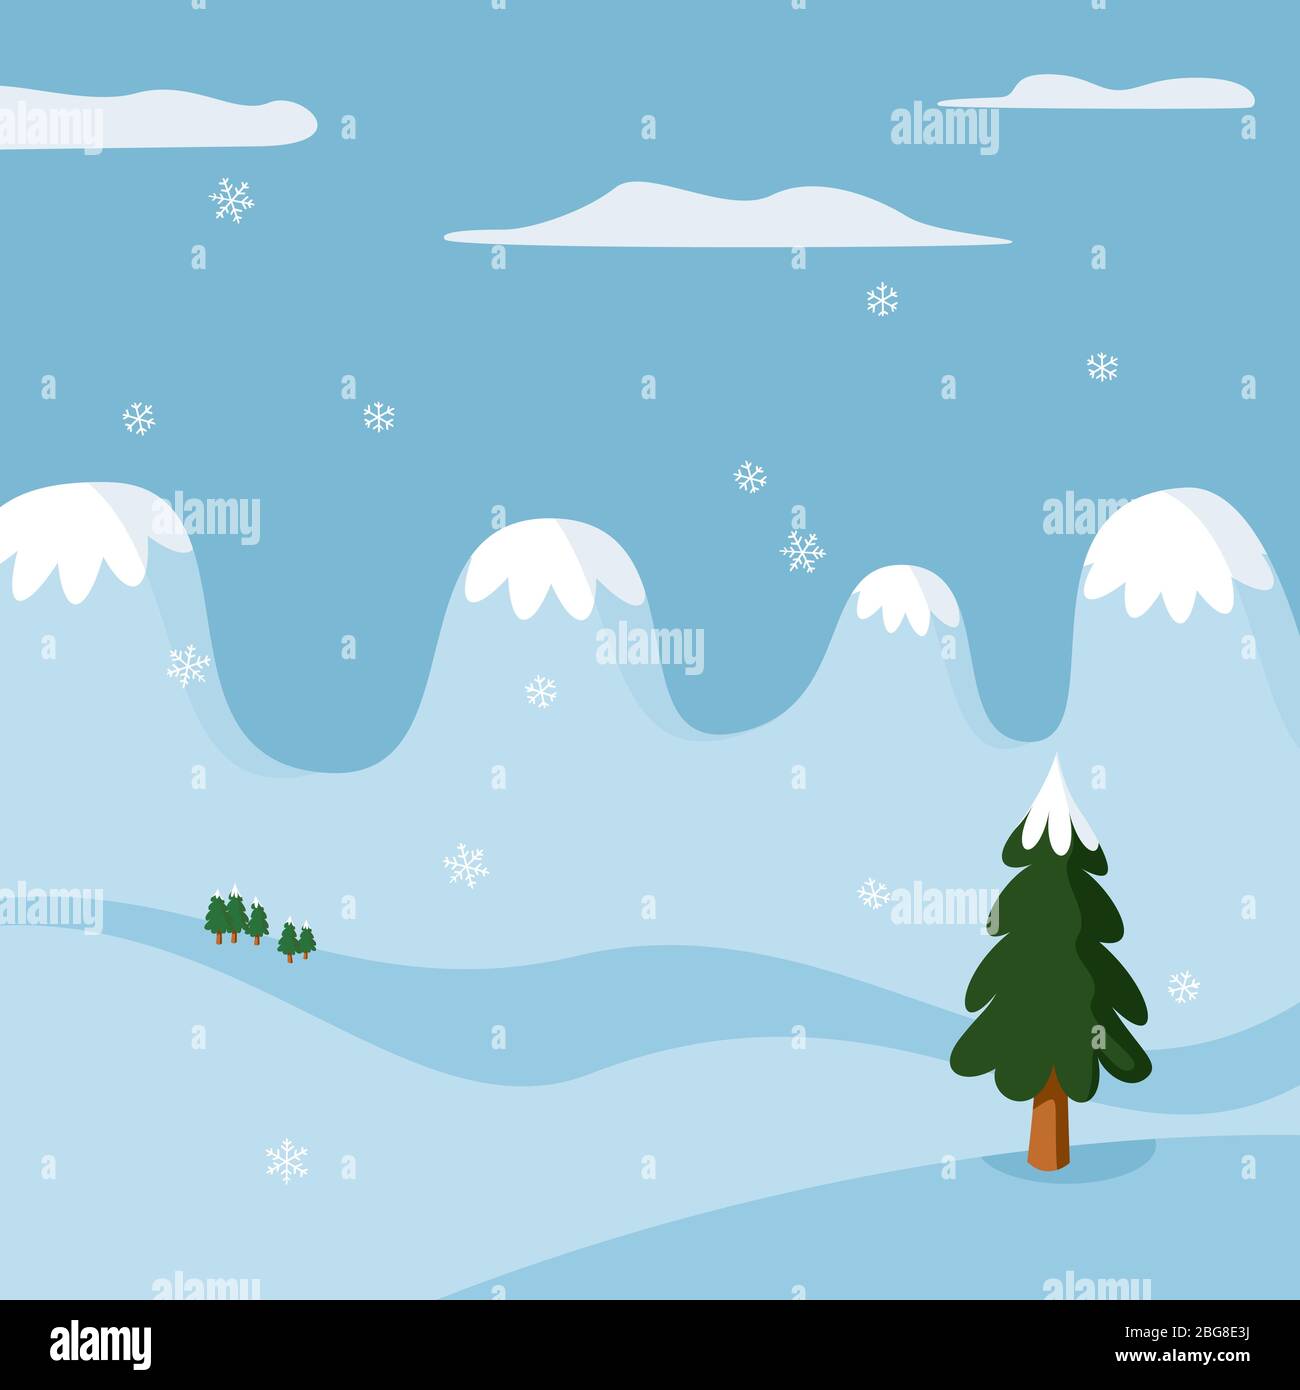 Illustrazione Vettoriale. Paesaggio invernale in stile cartoon e colori tenui. Illustrazione Vettoriale